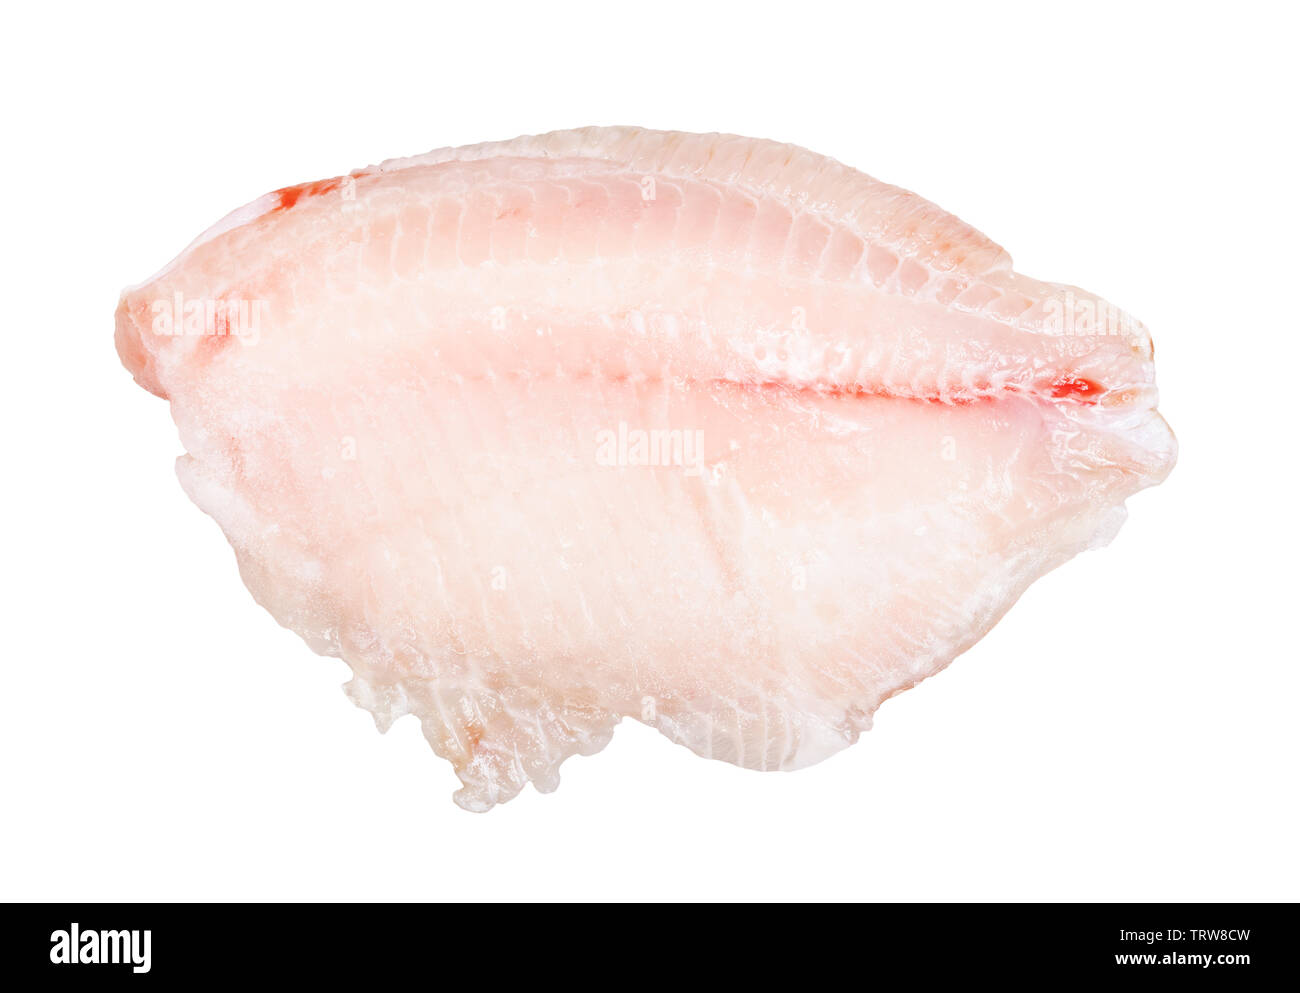 Raw gefrorenes entbeintes Filet vom Barsch Fisch auf weißem Hintergrund Stockfoto